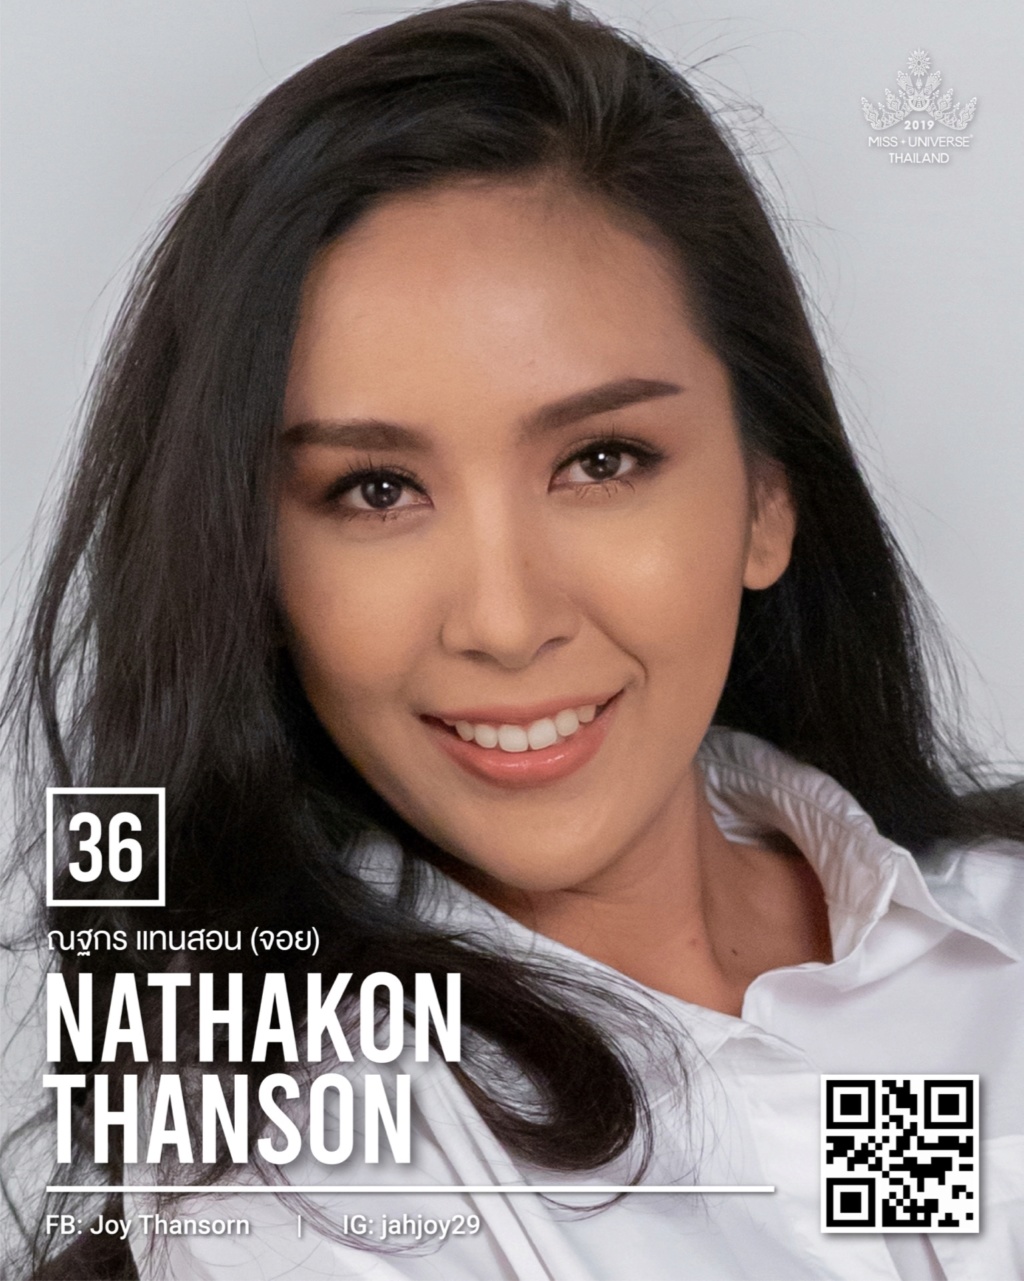 Miss Universe THAILAND 2019 - PORTRAITS!  - Page 2 11226